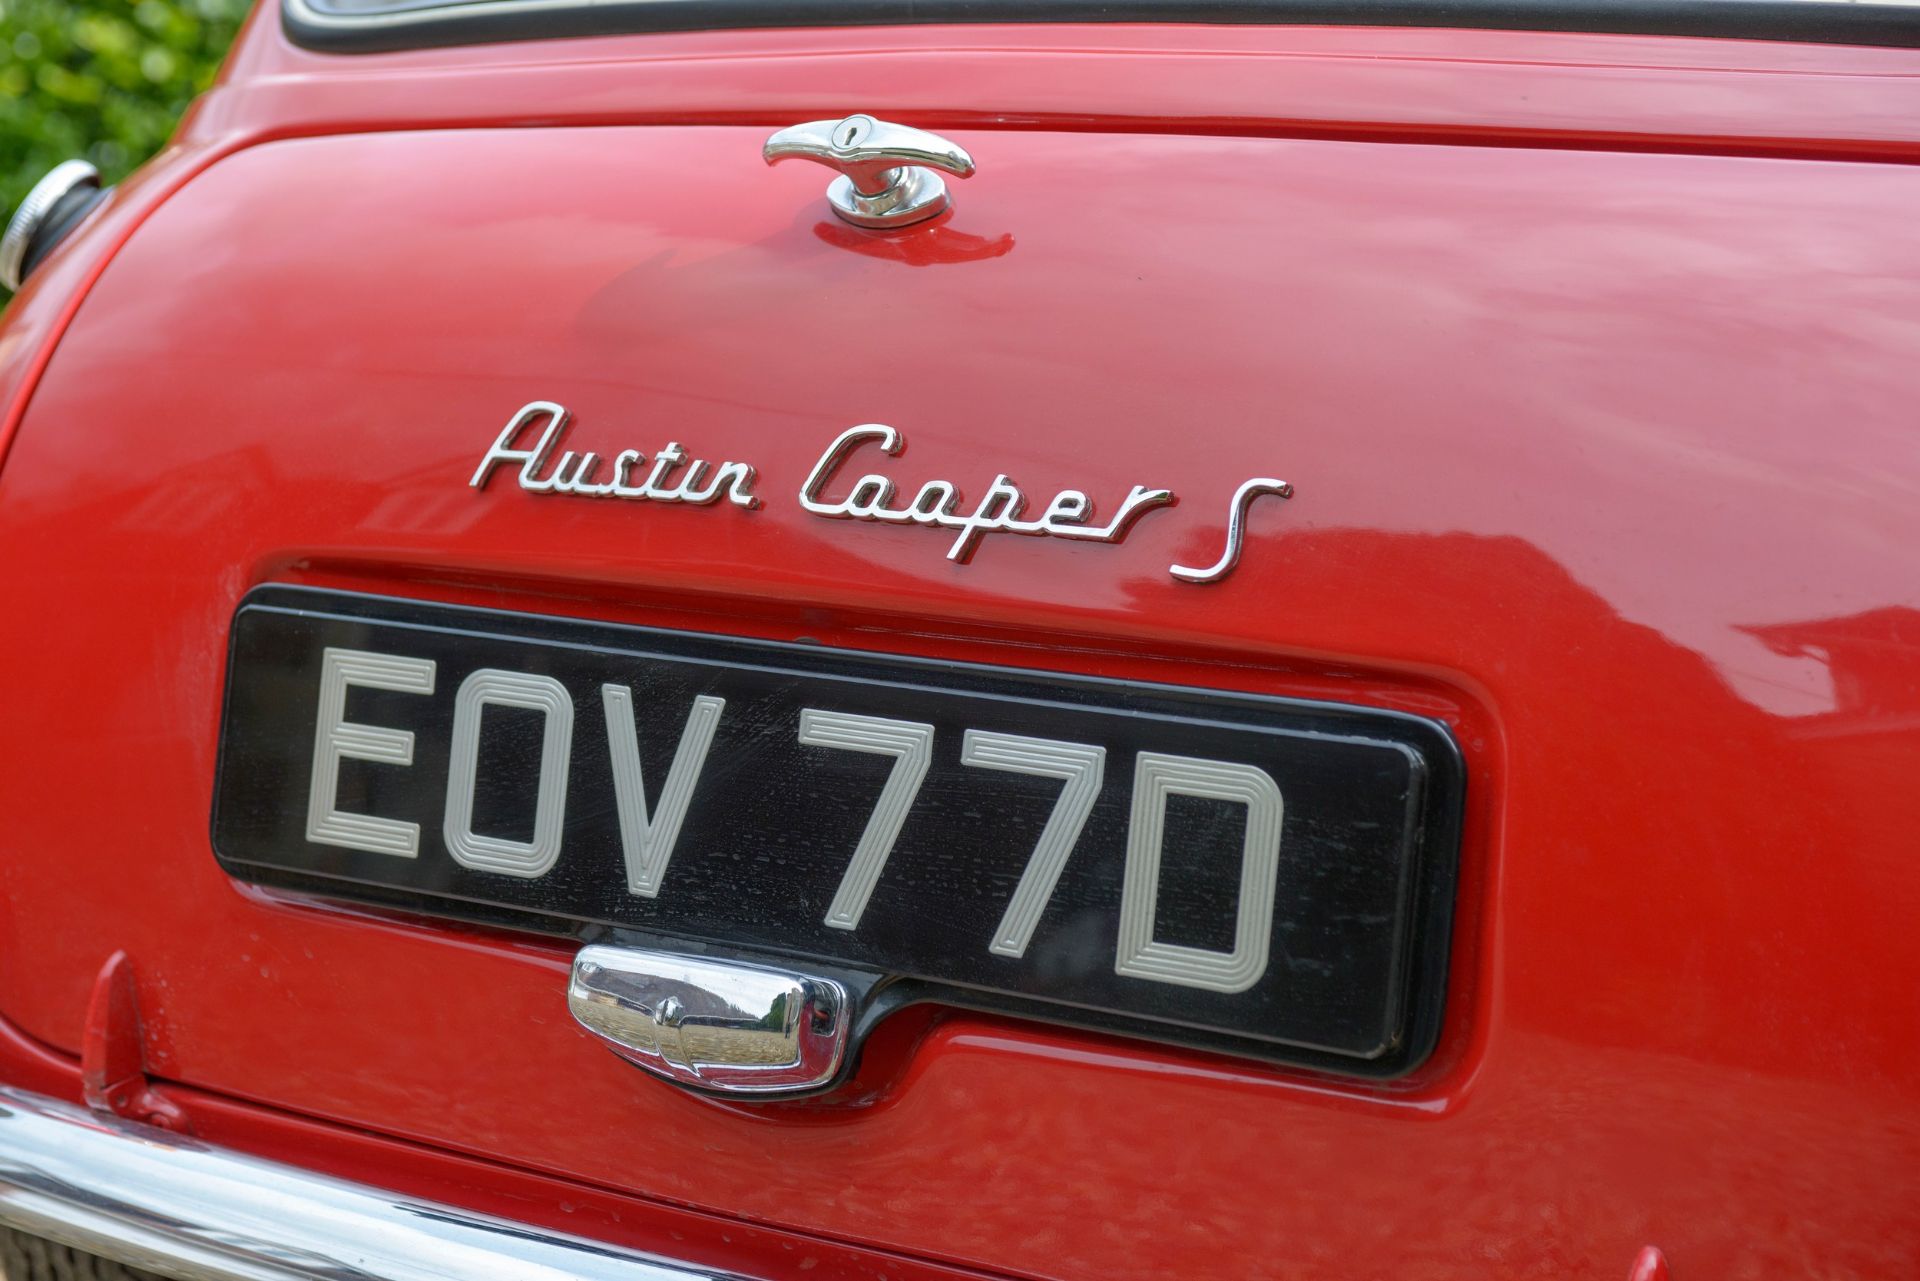 1966 AUSTIN COOPER 1275 'S' Registration Number: EOV 77D Chassis Number: See description Recorded - Image 11 of 37